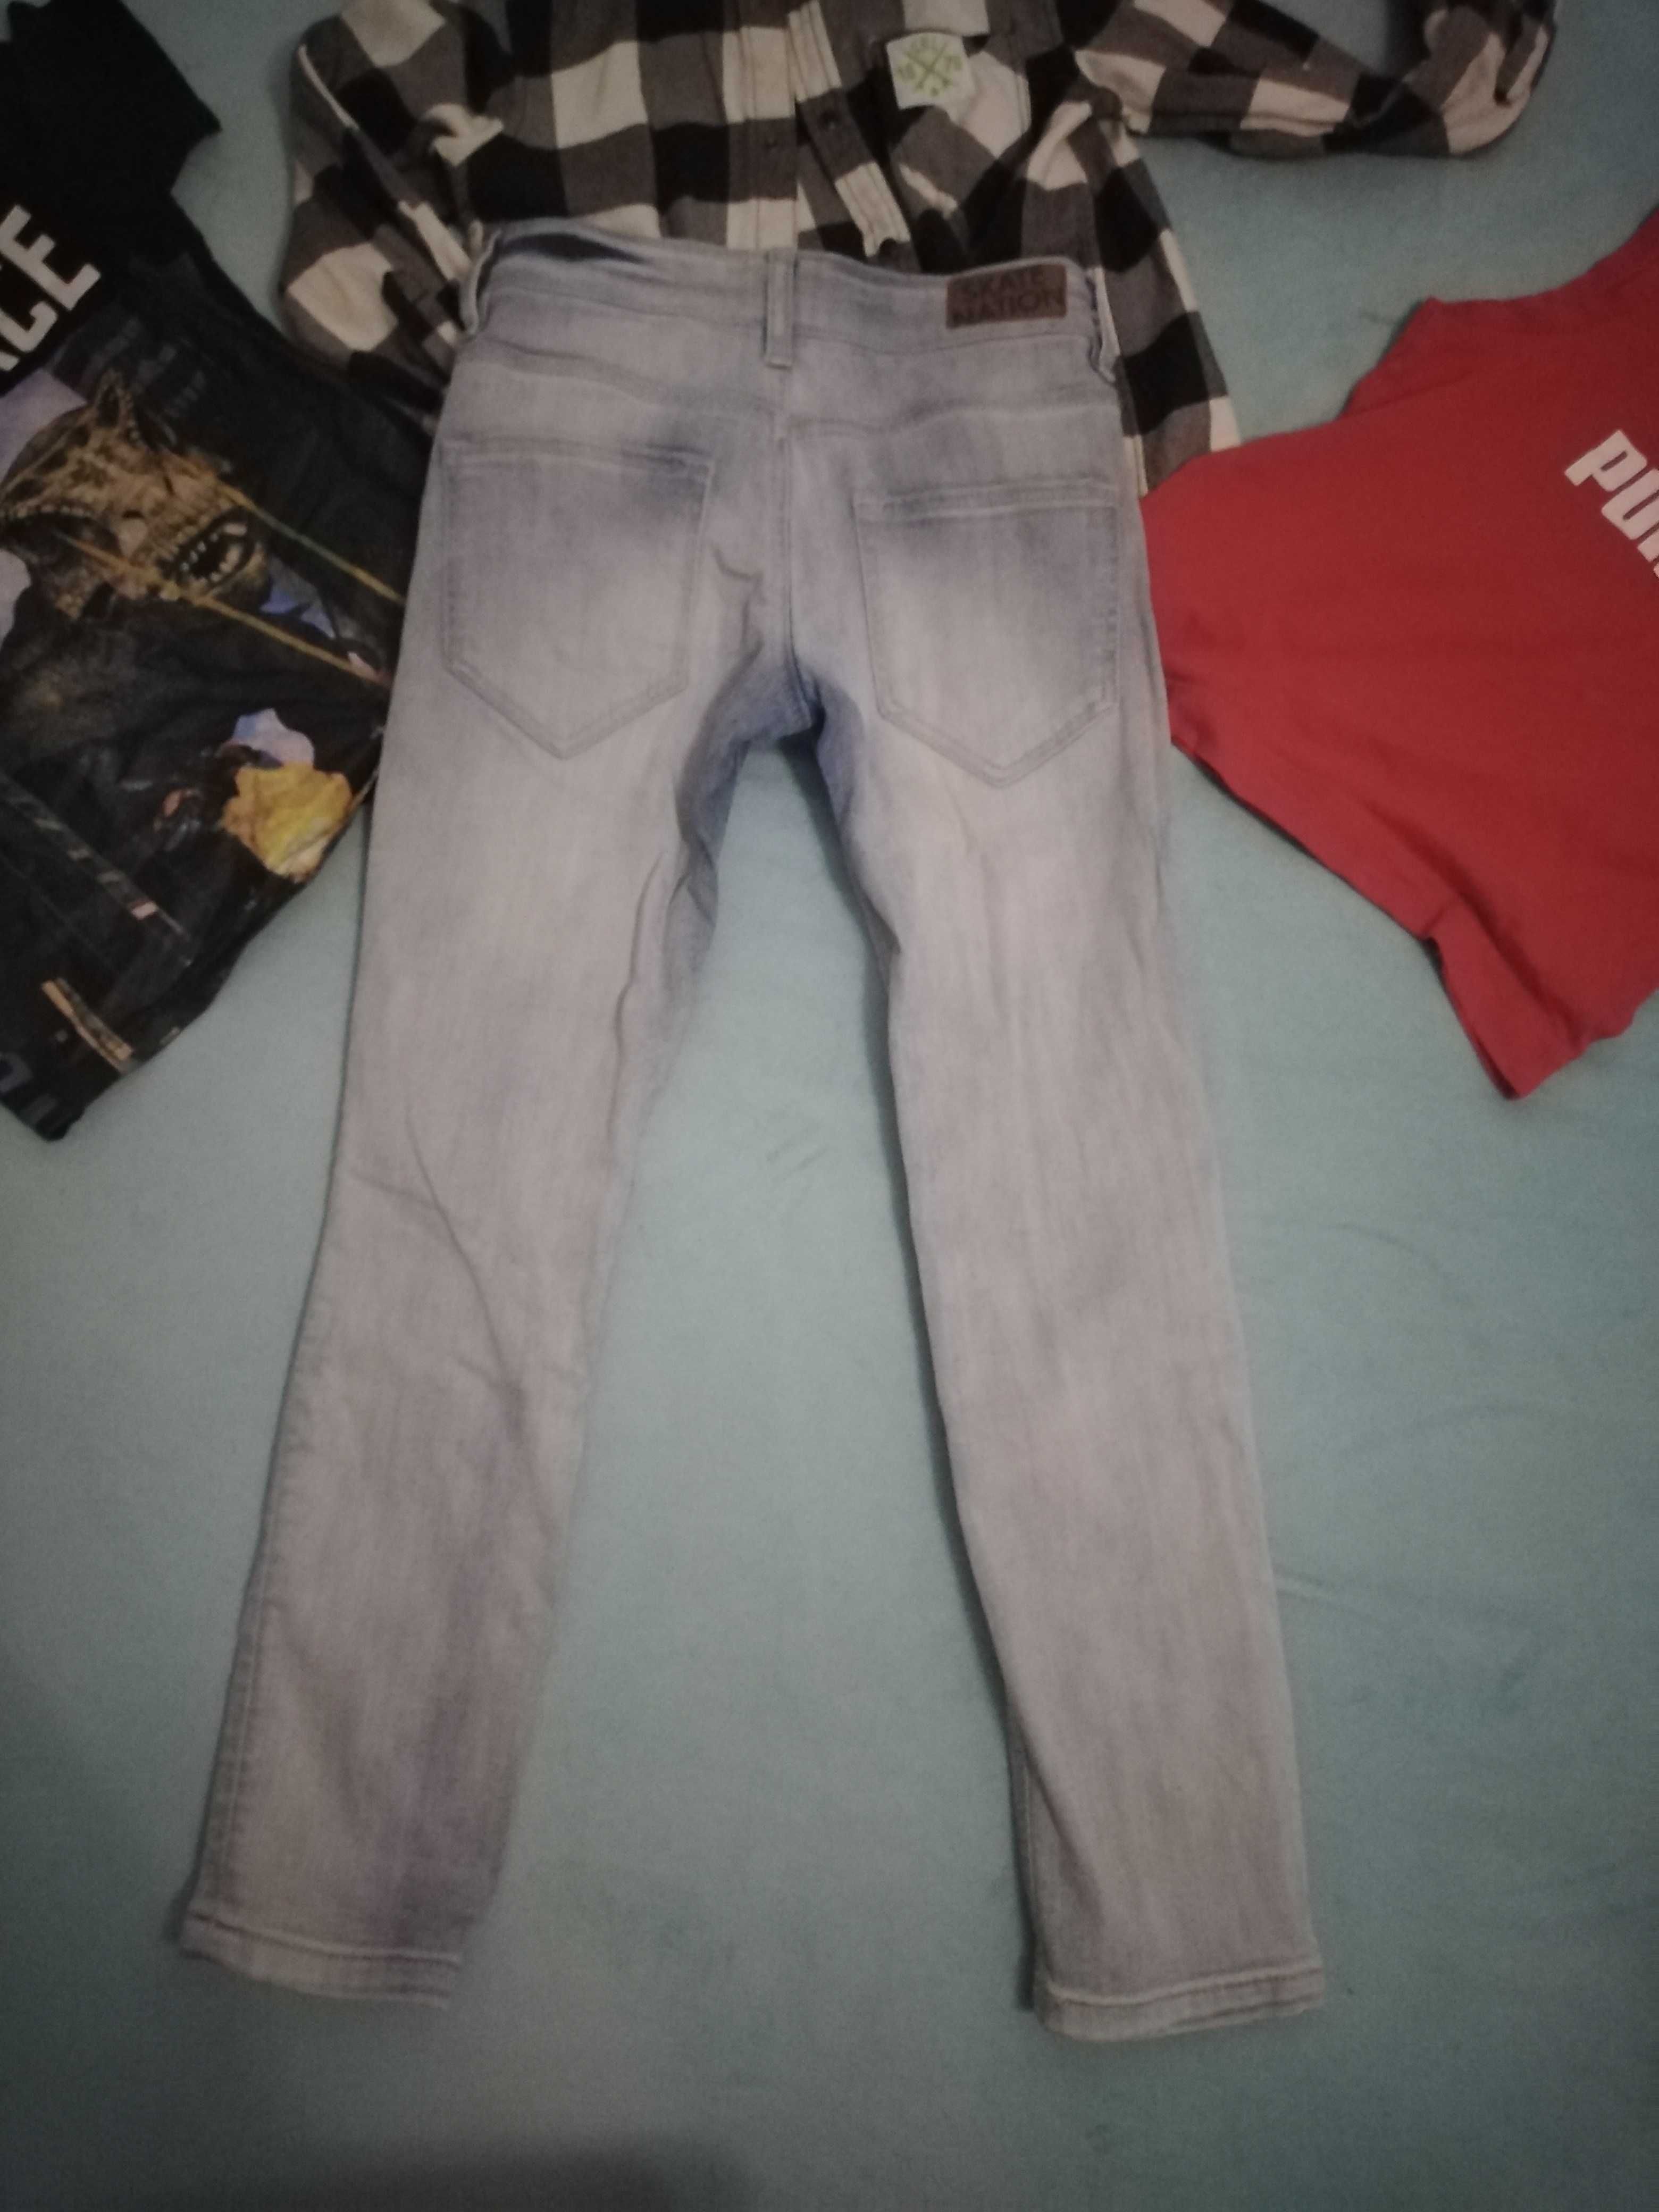 H&M Puma Spodnie rurki jeansowe t-shirt koszulki komplet zestaw 128cm